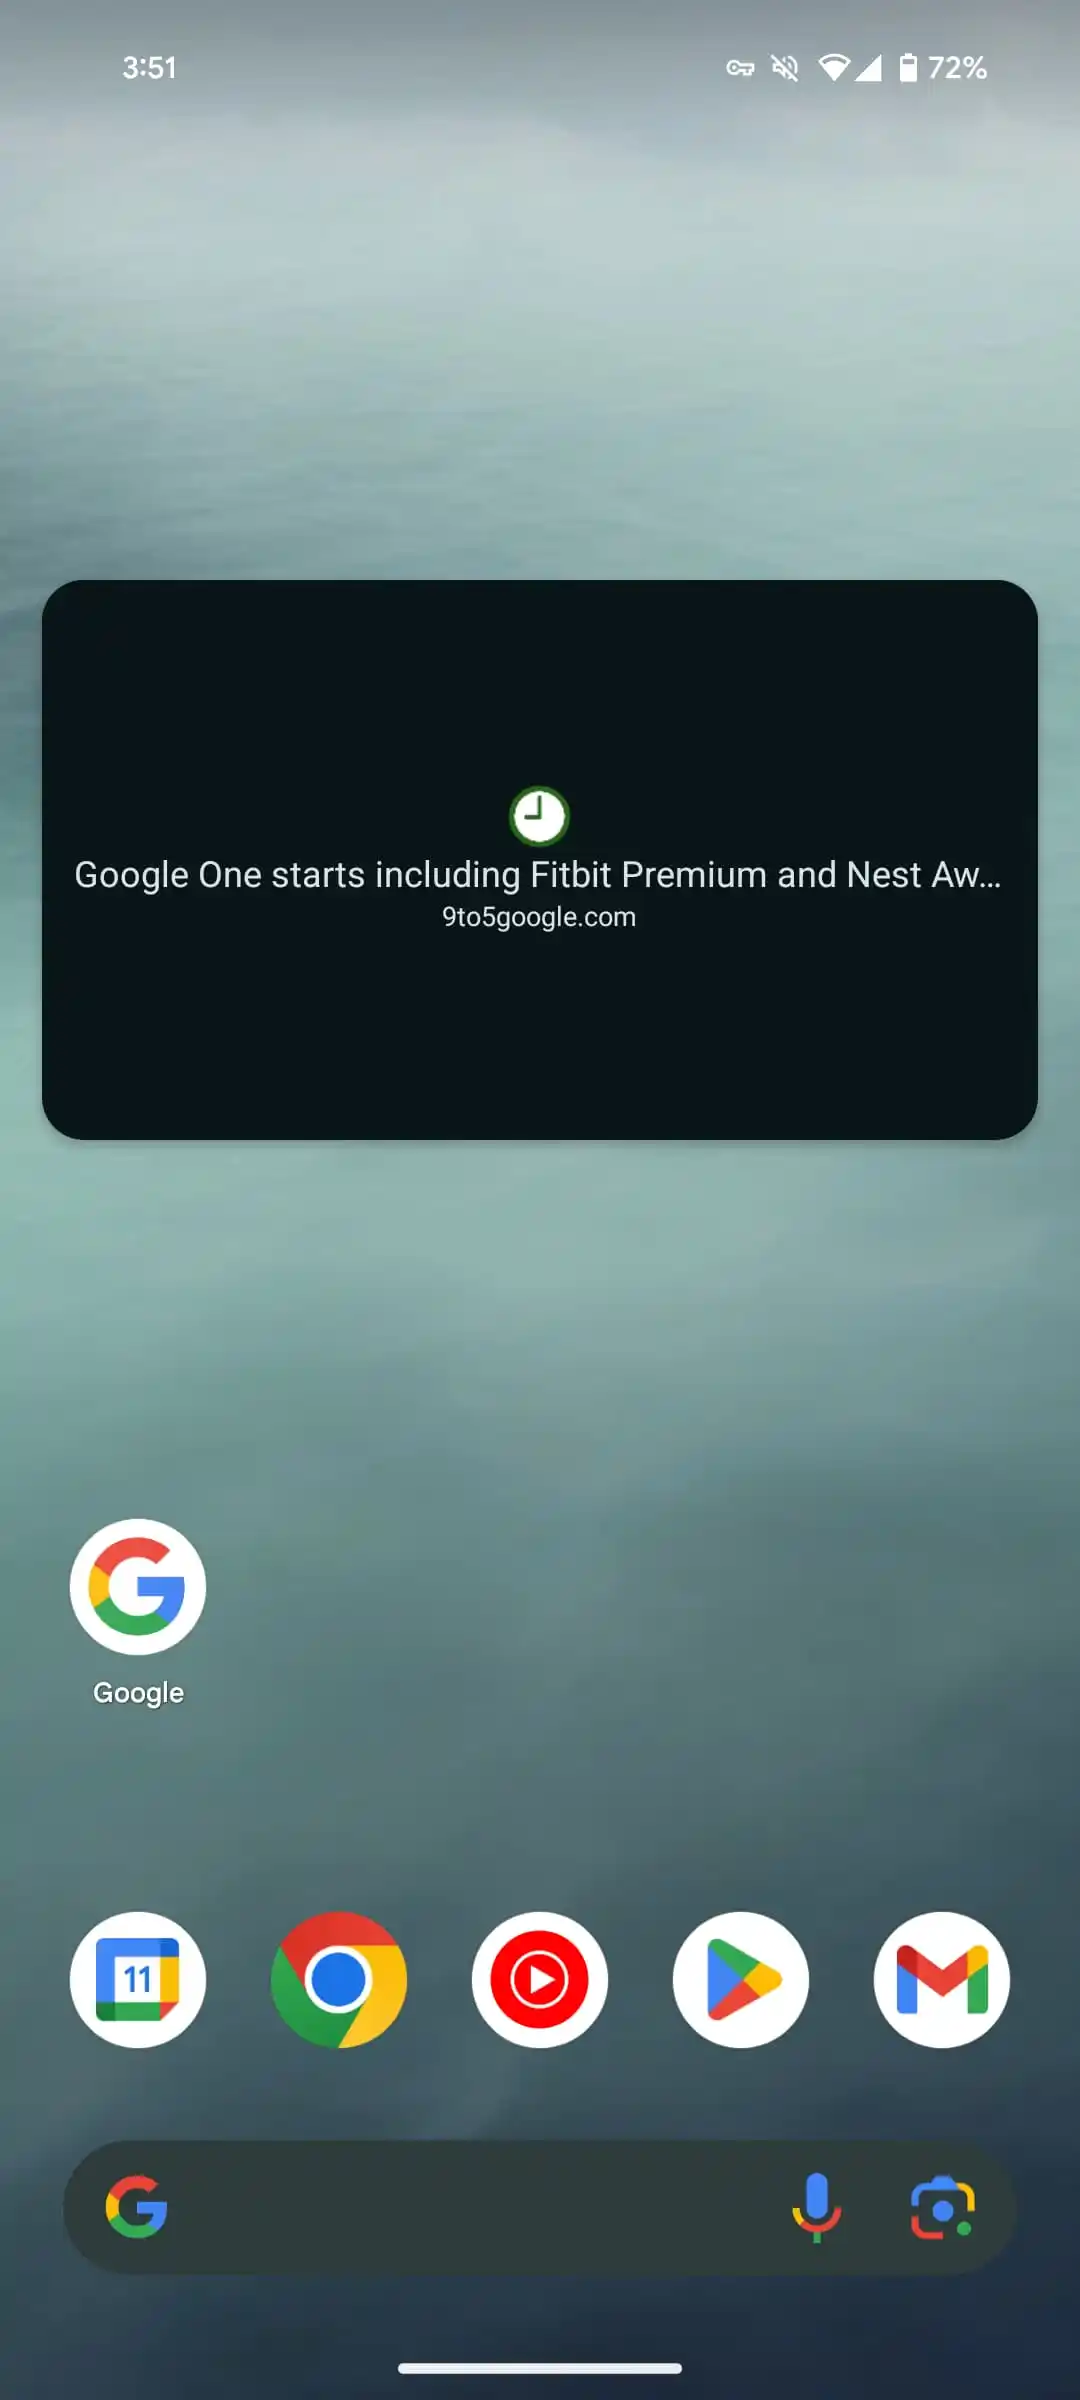 Google Mulai Uji Coba Custom Tabs di Google Chrome